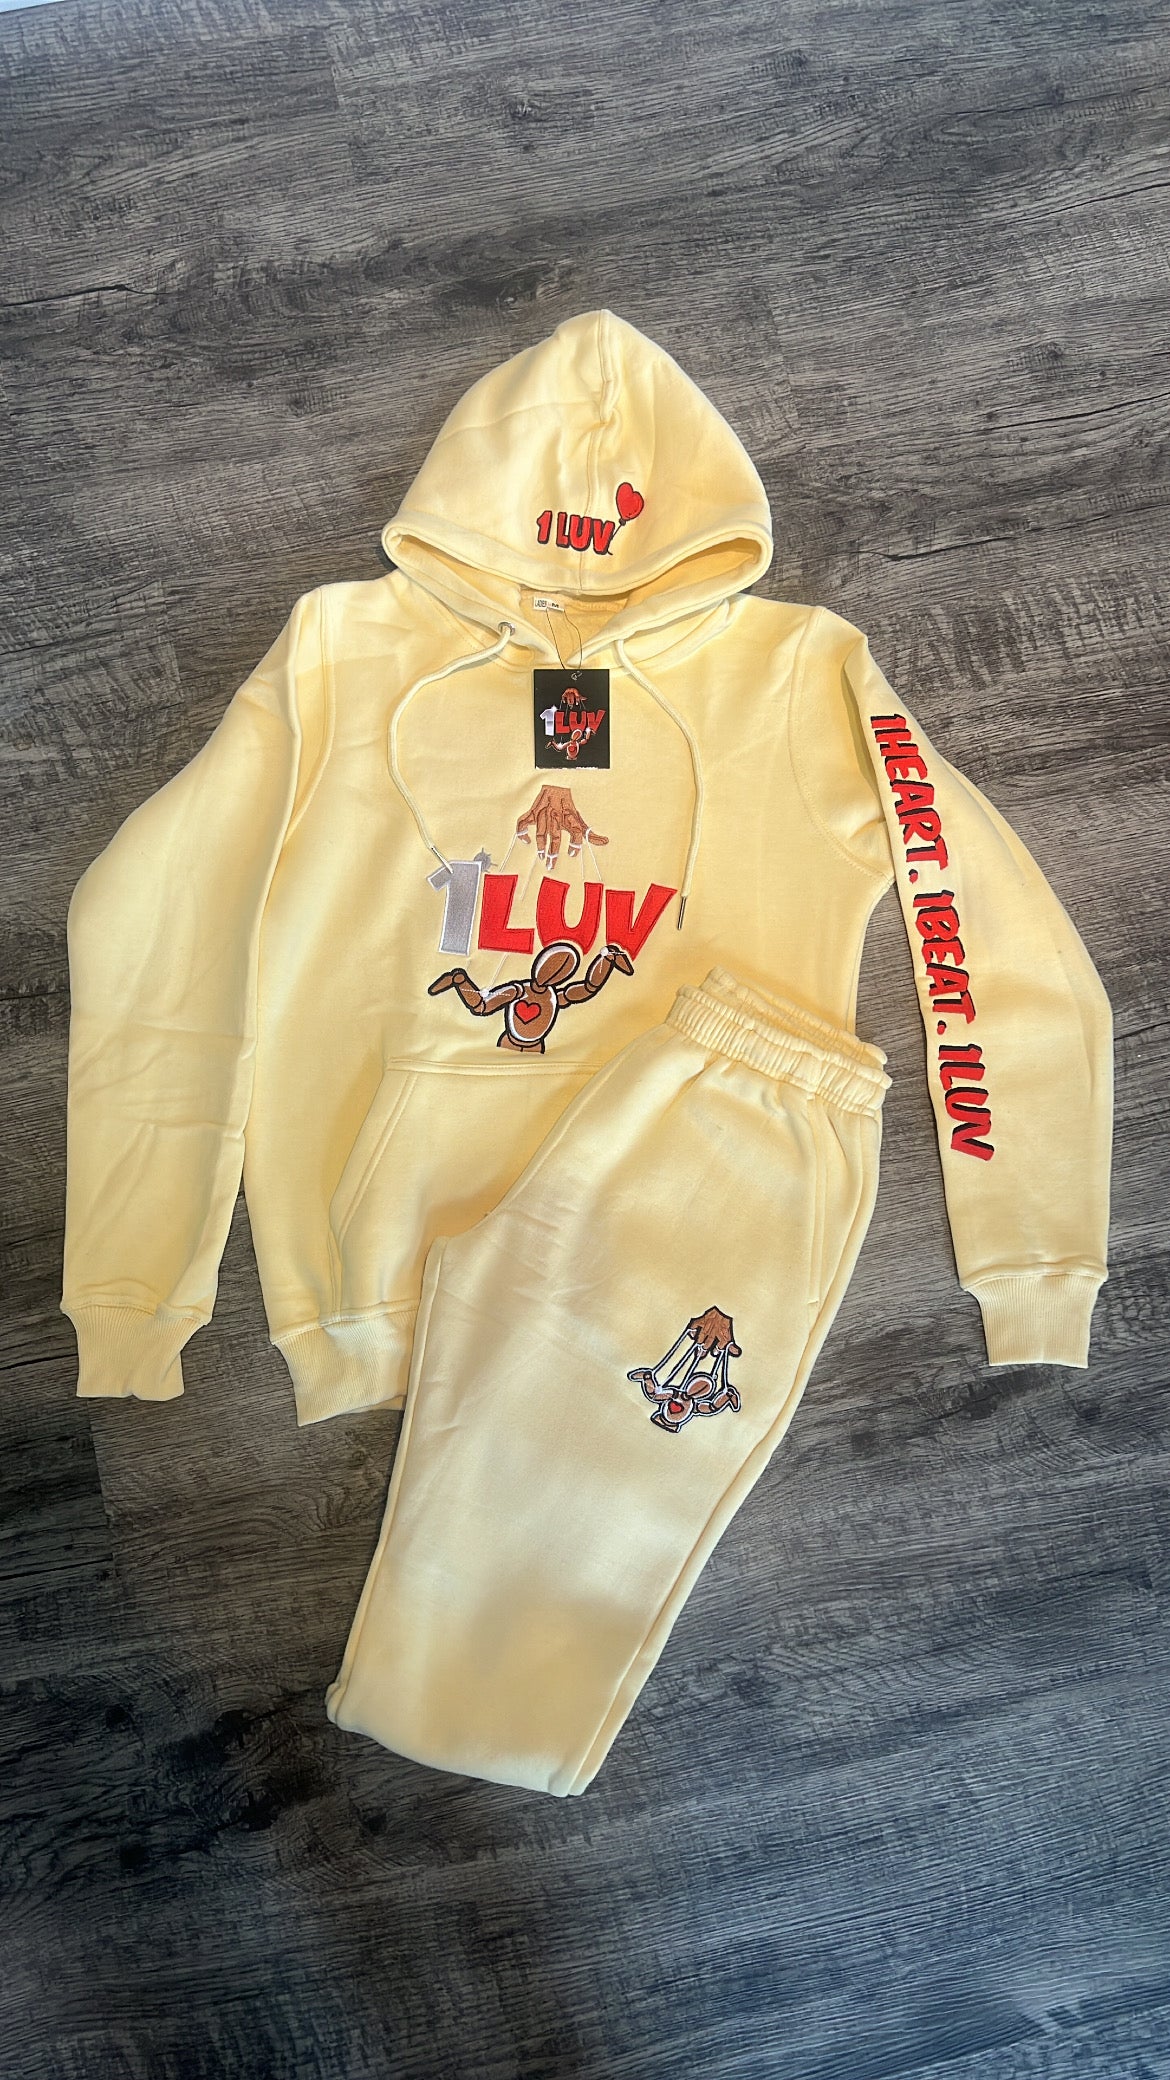 1Luv “Cream Rebrand" Jogging Suit (Mens)